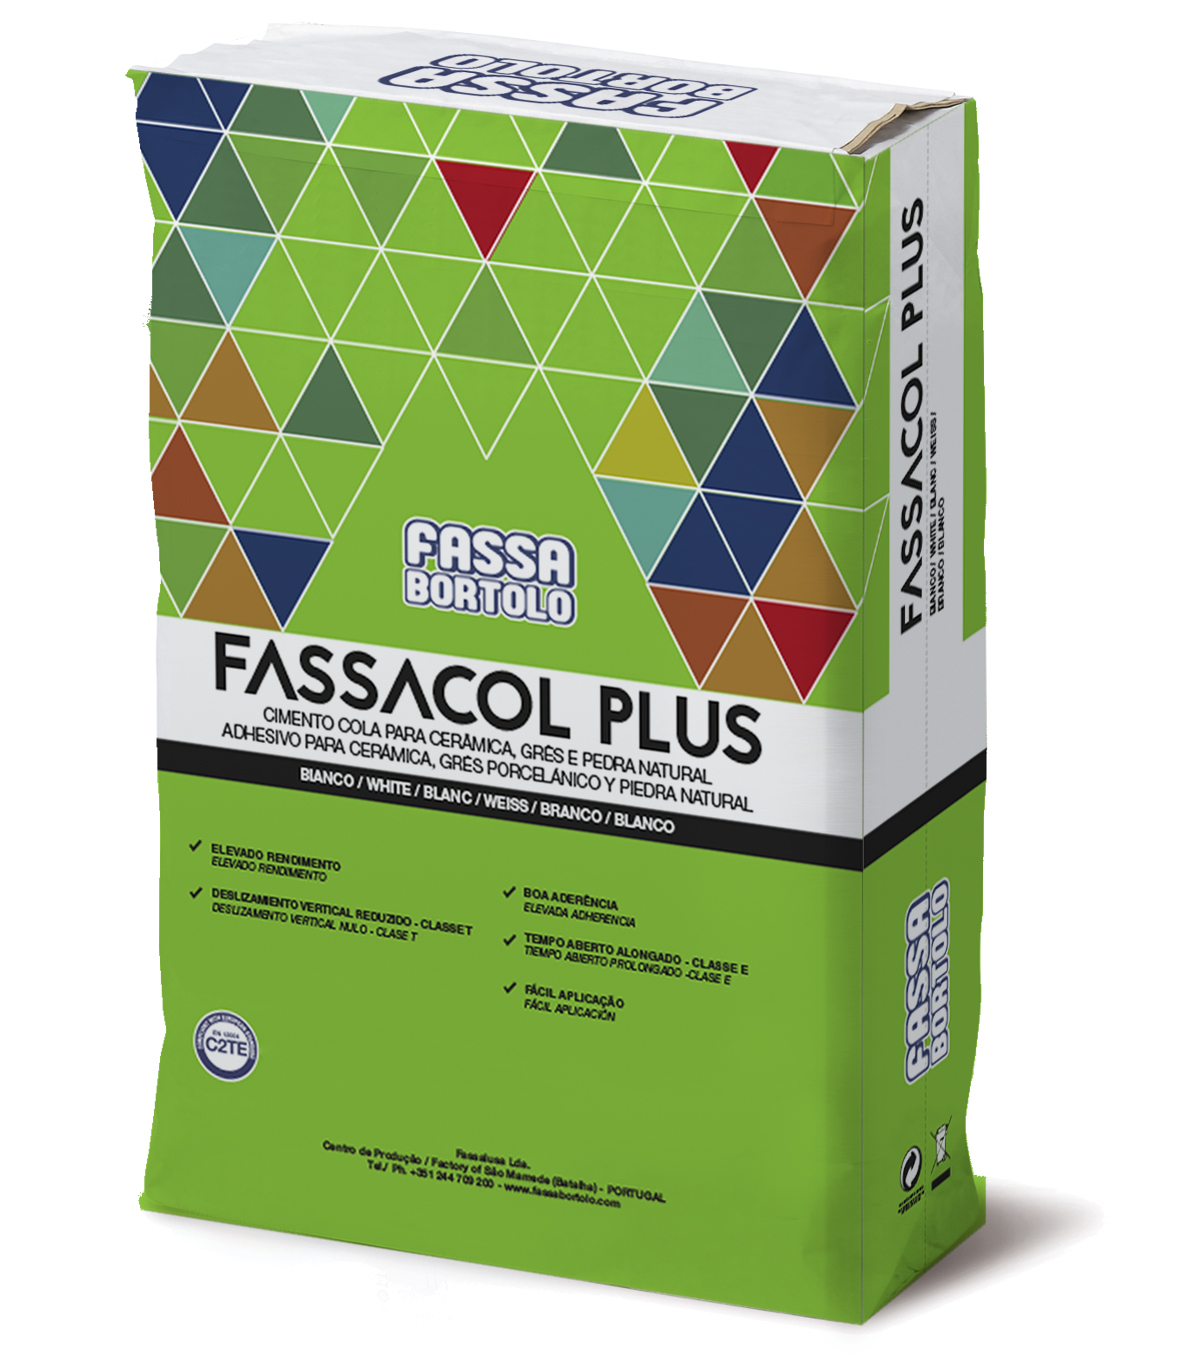 FASSACOL PLUS: Adhesivo a base de cemento, monocomponente, blanco y gris, para pavimentos y revestimientos exteriores e interiores